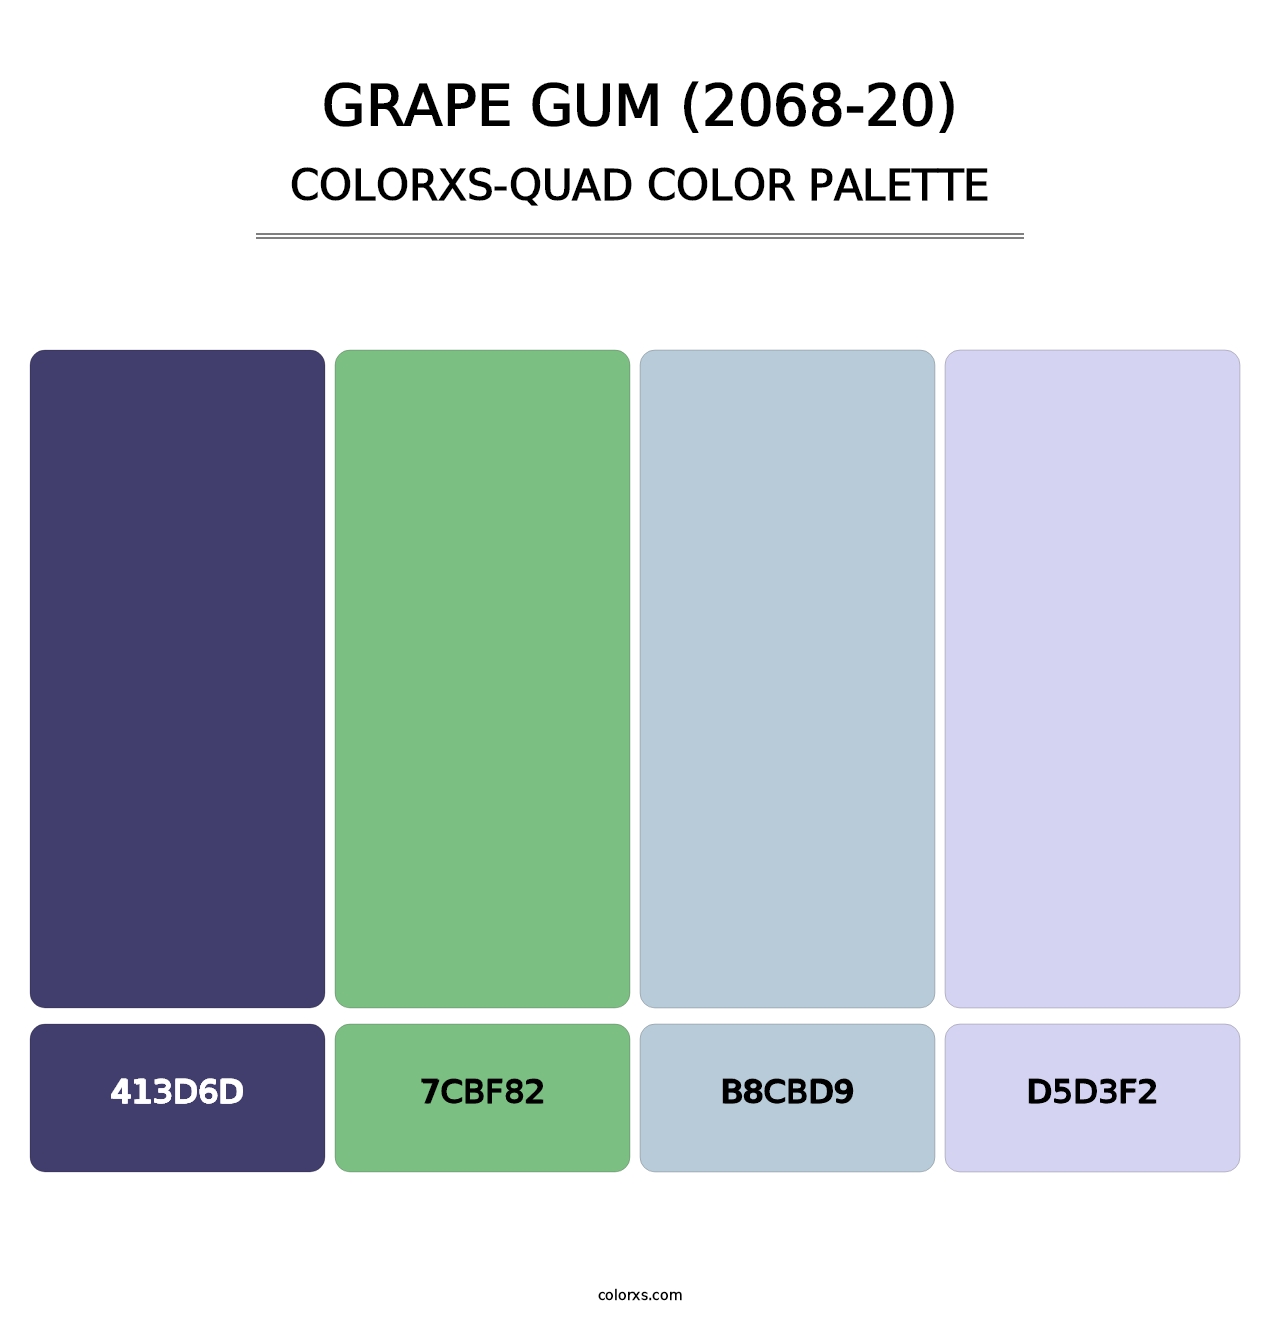 Grape Gum (2068-20) - Colorxs Quad Palette